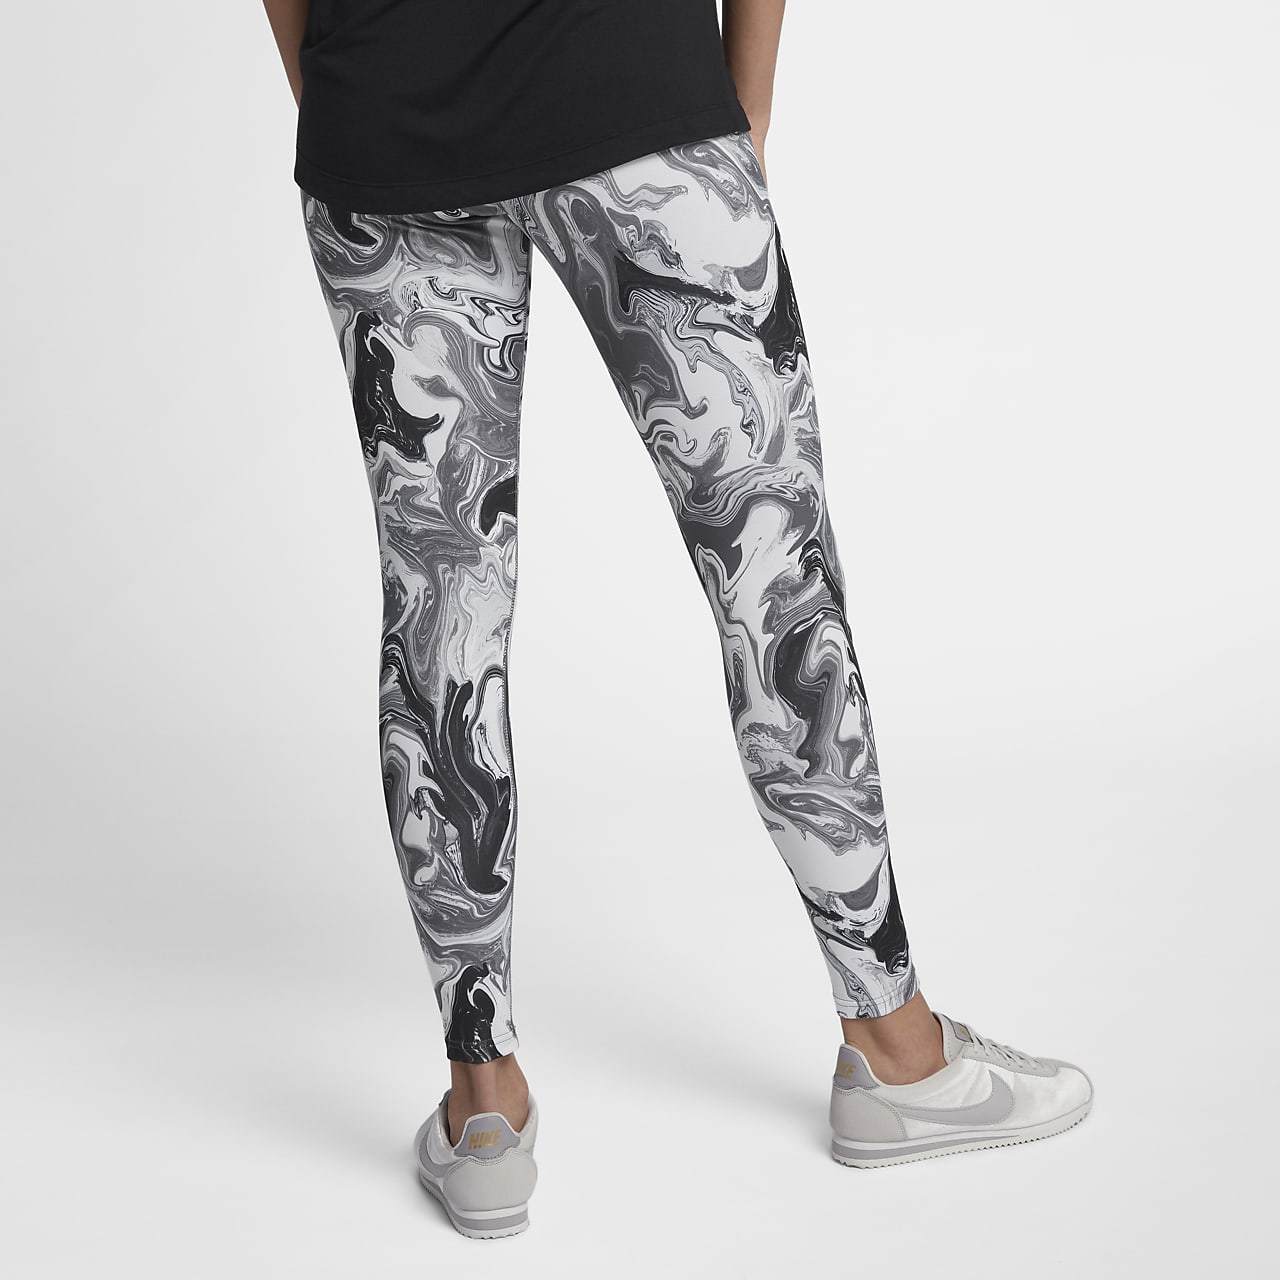 Nike, Pants & Jumpsuits, Selling Nike Grey Leggings